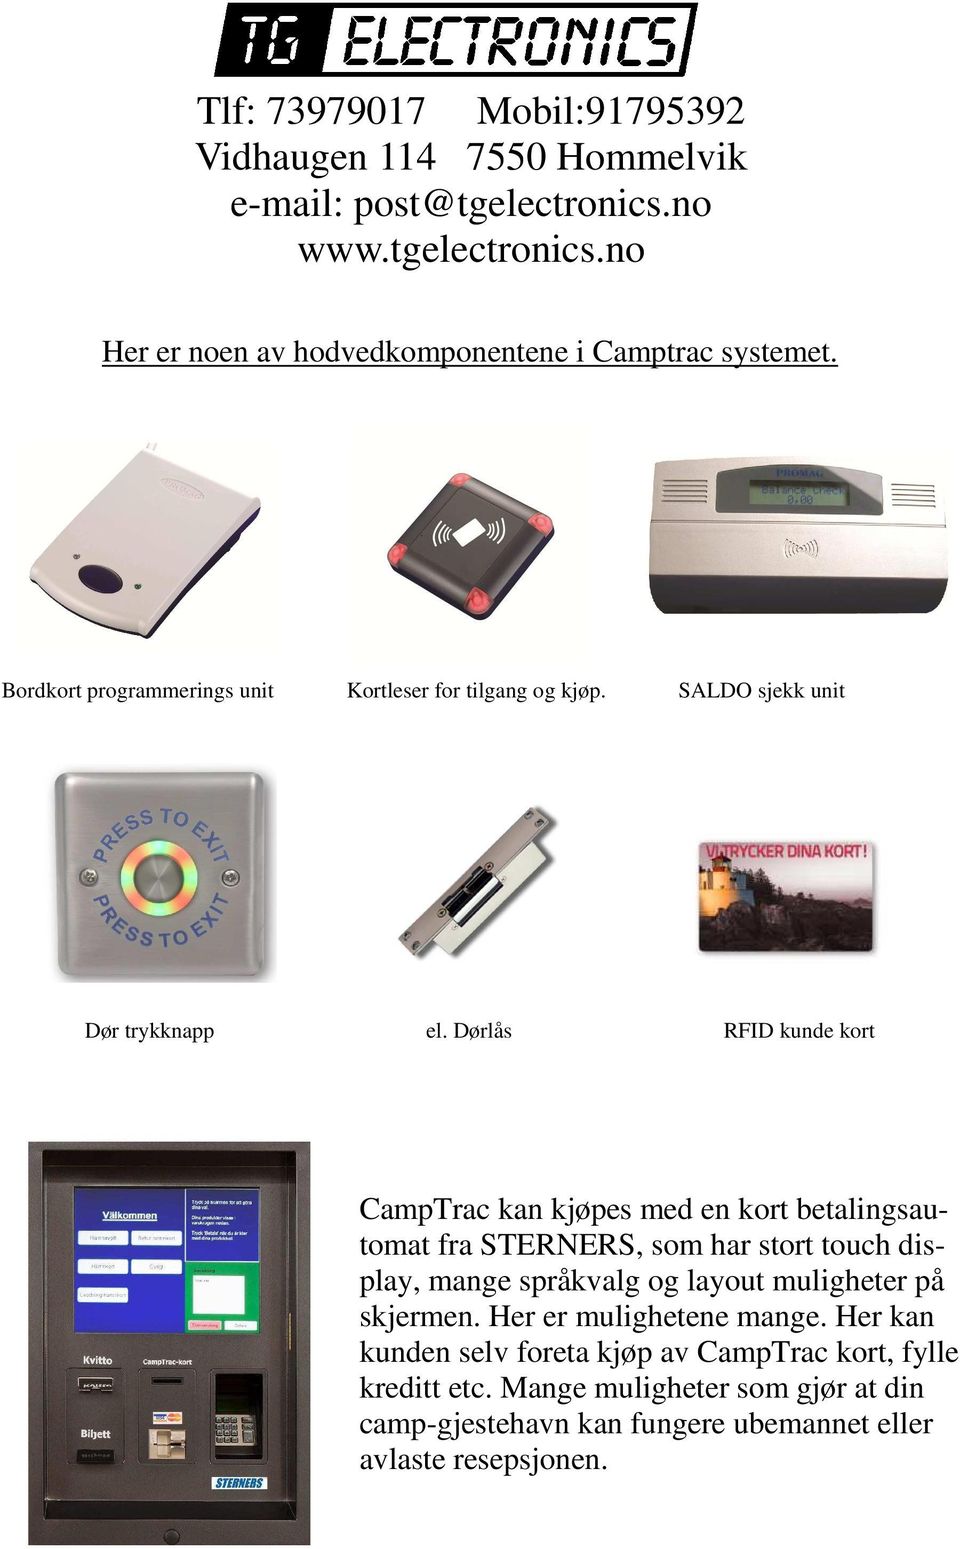 Dørlås RFID kunde kort CampTrac kan kjøpes med en kort betalingsautomat fra STERNERS, som har stort touch display, mange